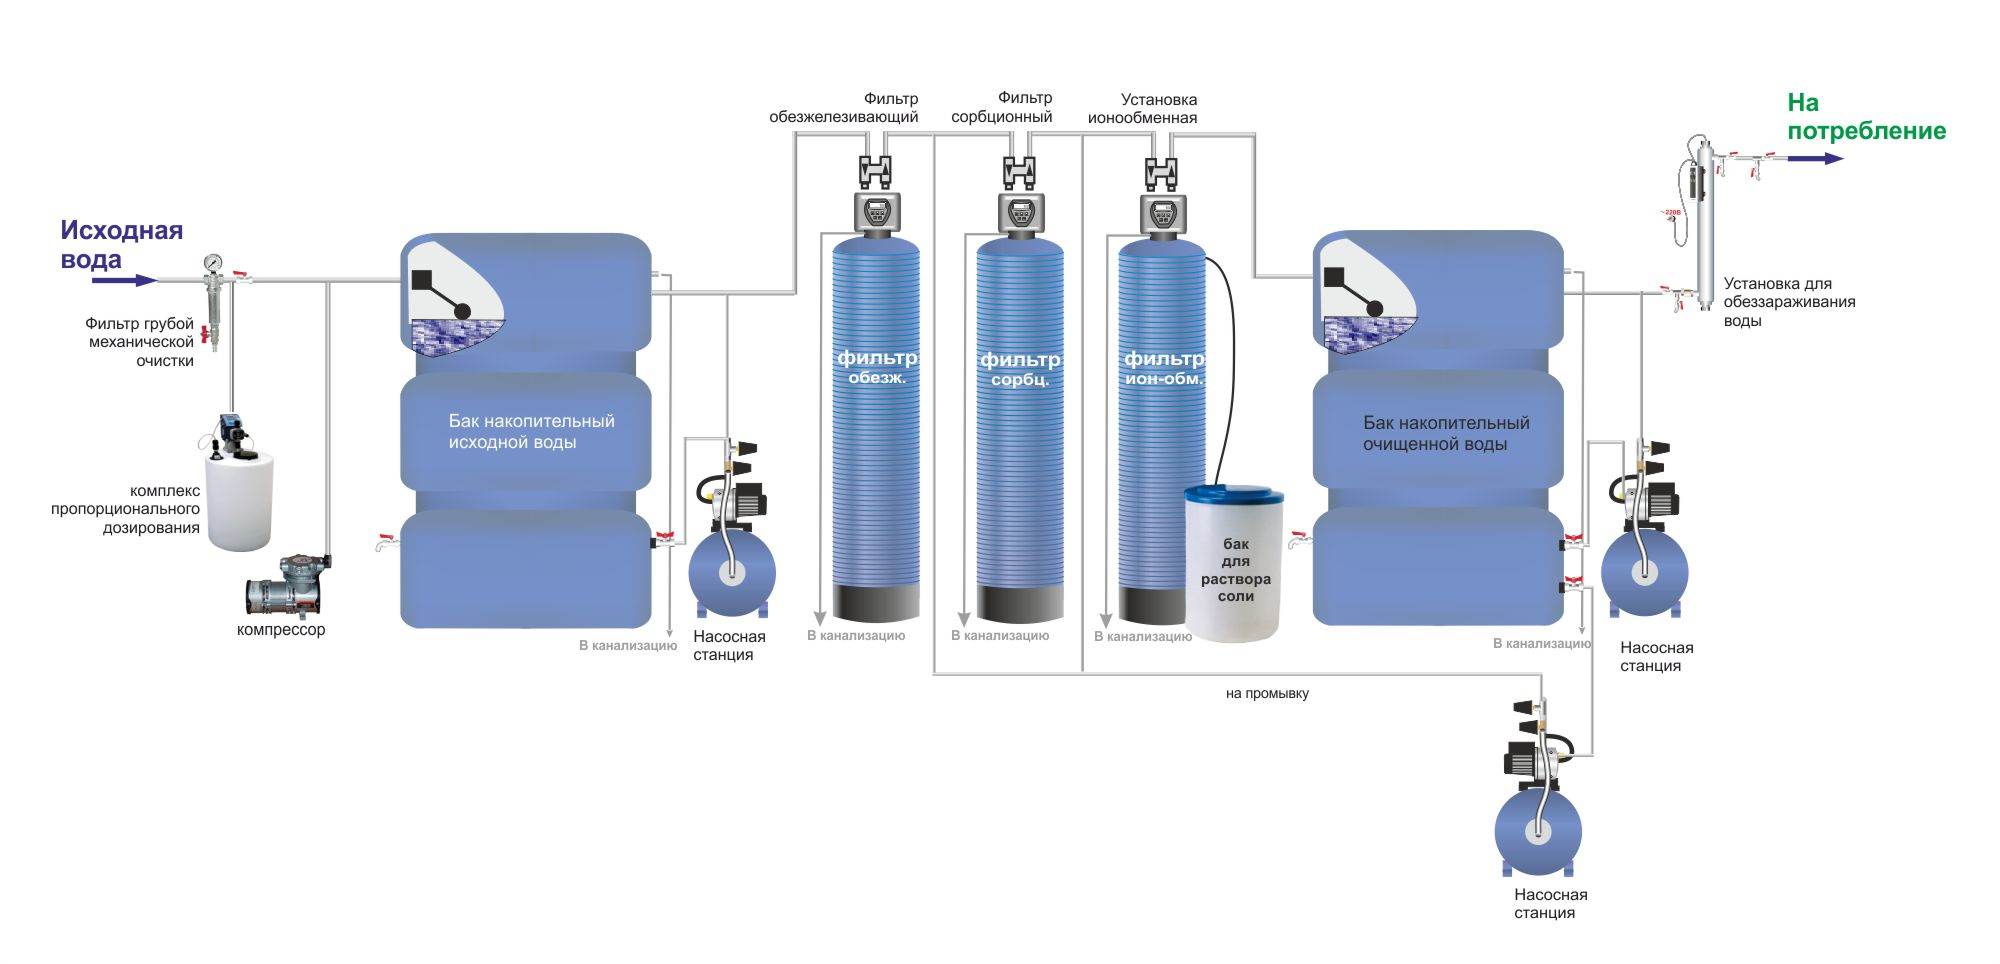 Схема системы фильтрации воды питьевой воды